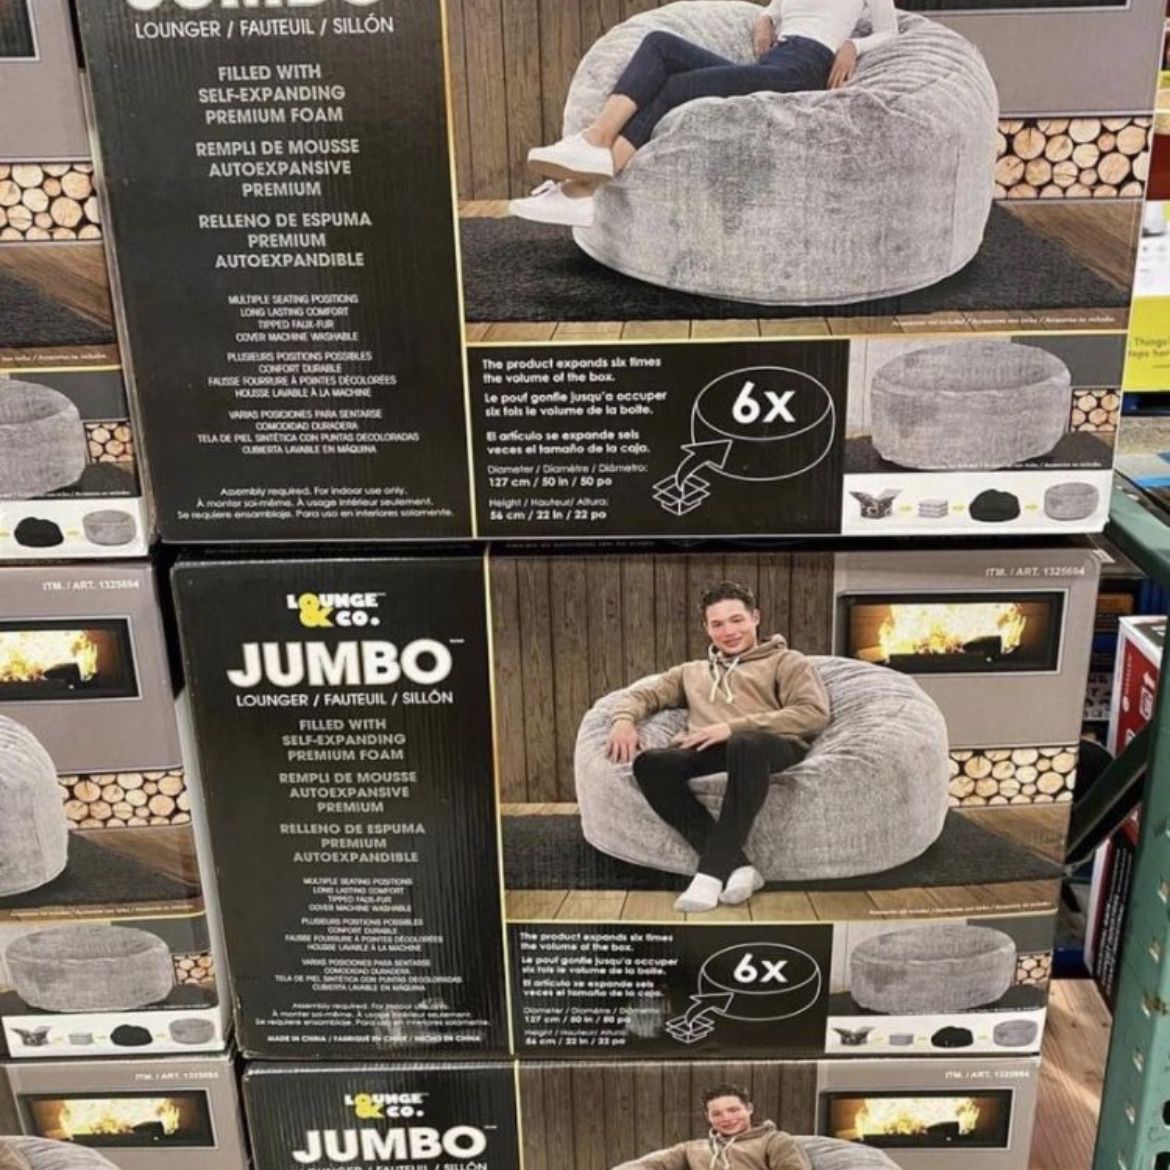 Jumbo Lounger